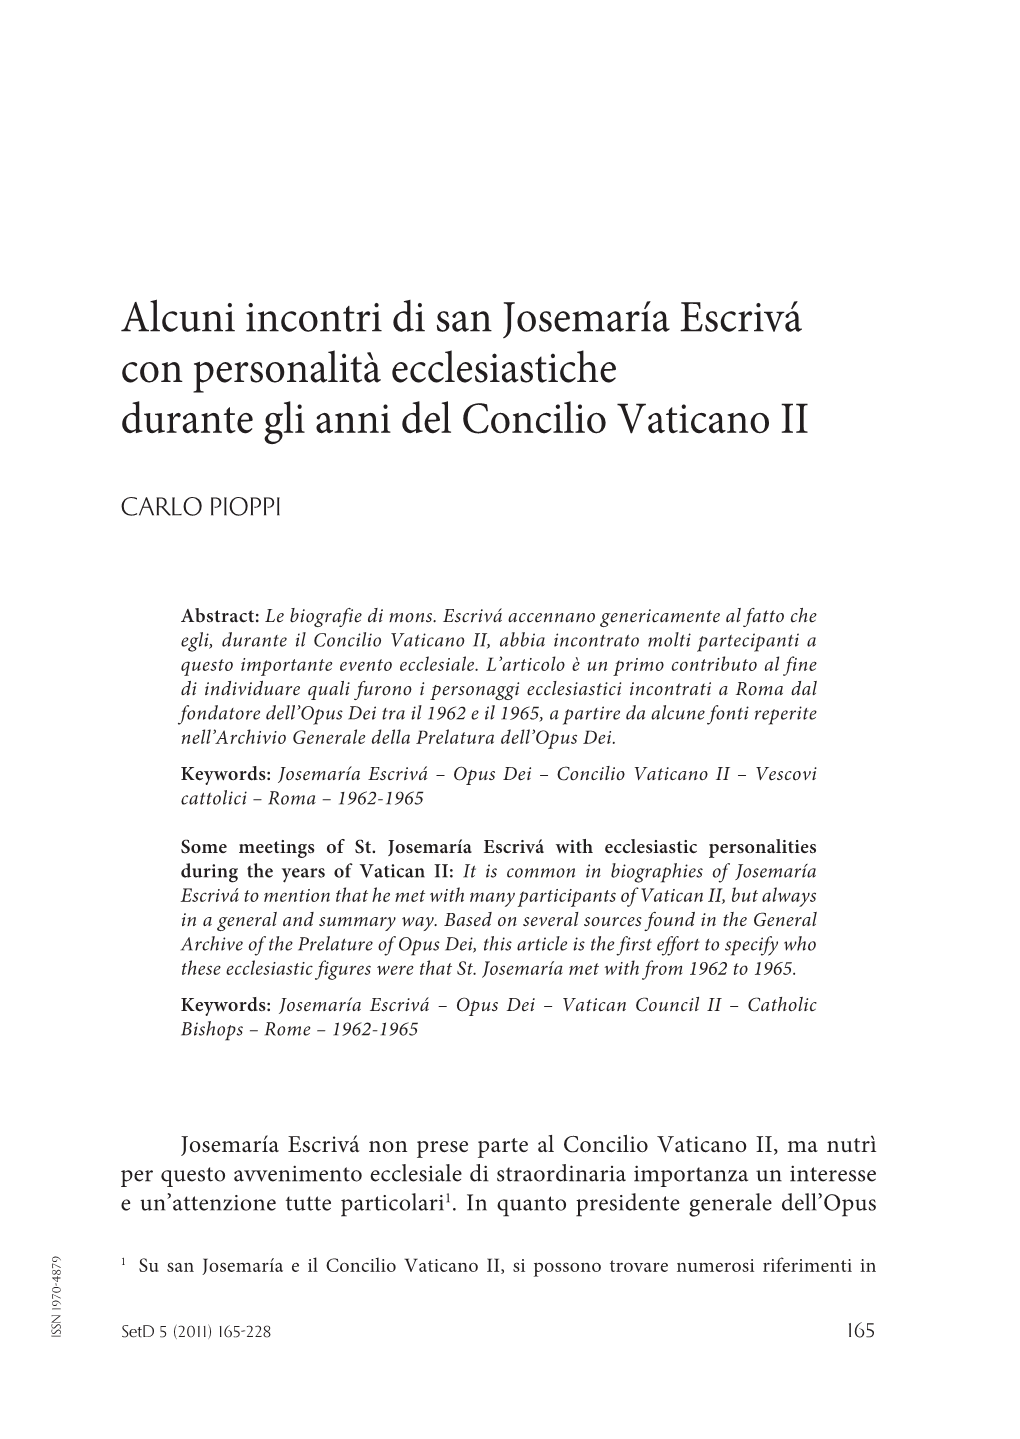 Alcuni Incontri Di San Josemaría Escrivá Con Personalità Ecclesiastiche Durante Gli Anni Del Concilio Vaticano II